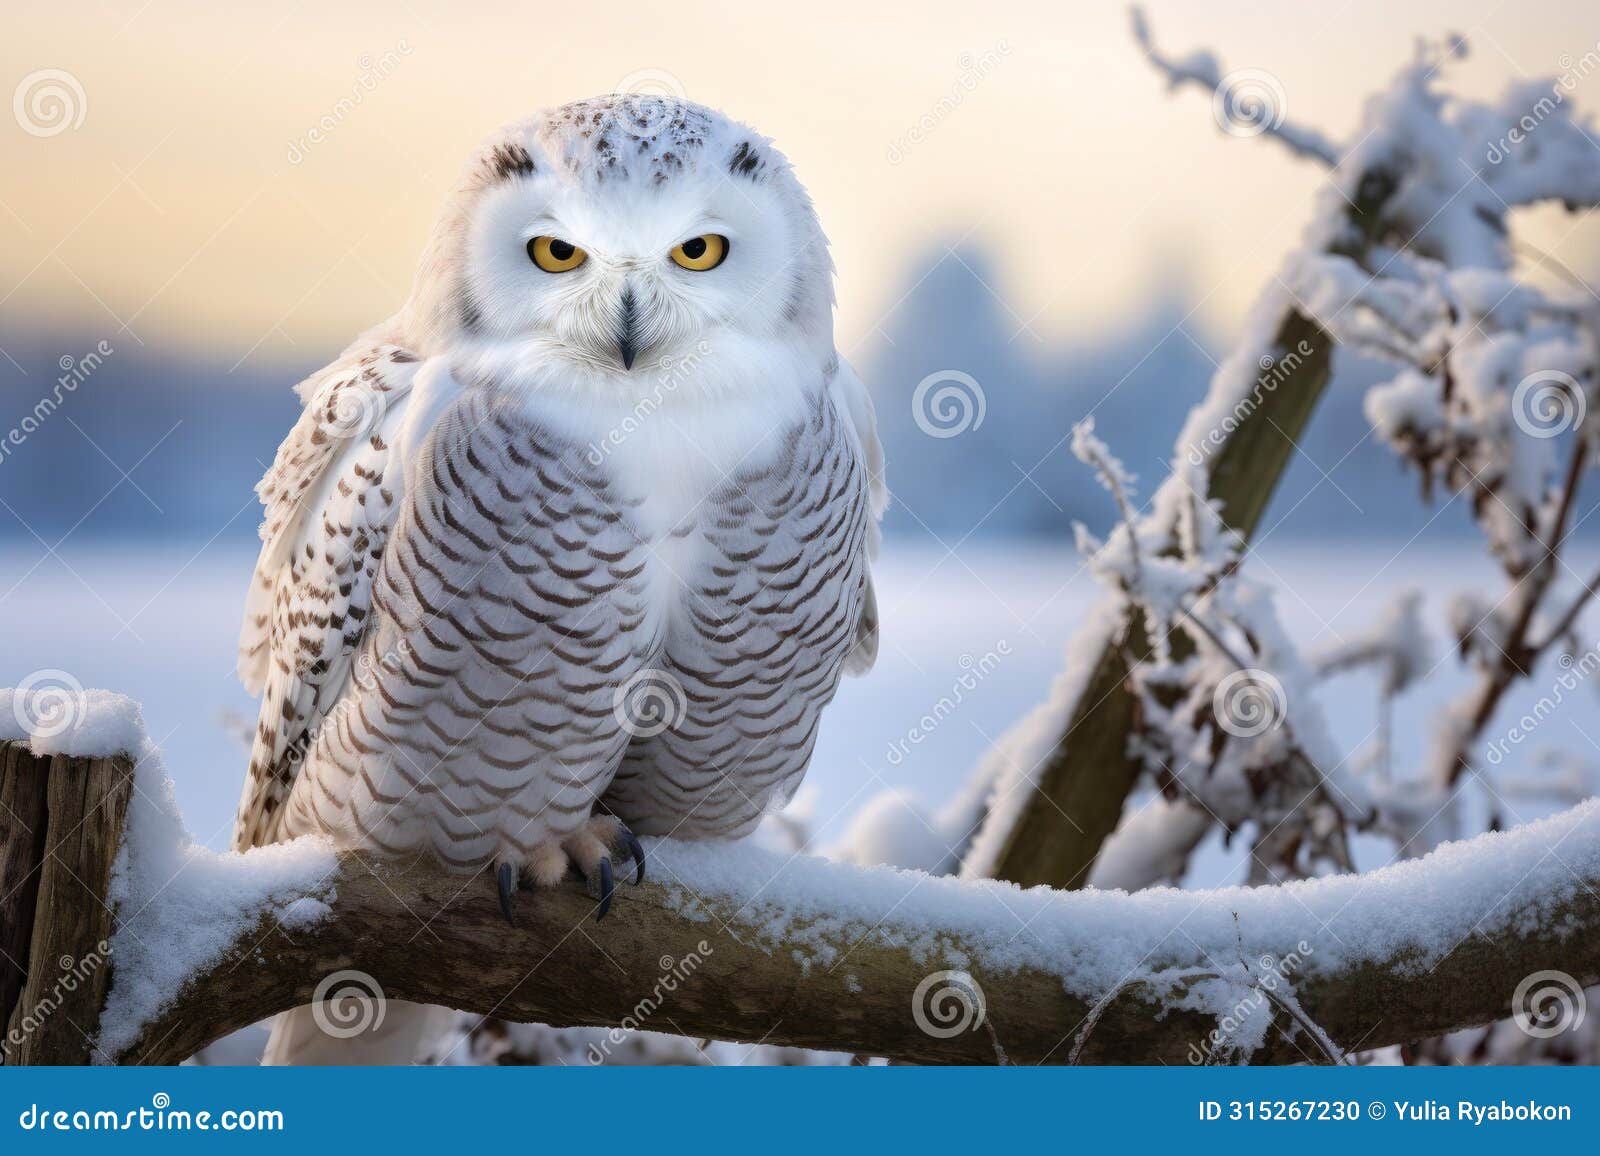 sturdy snowy owl tree branch. generate ai